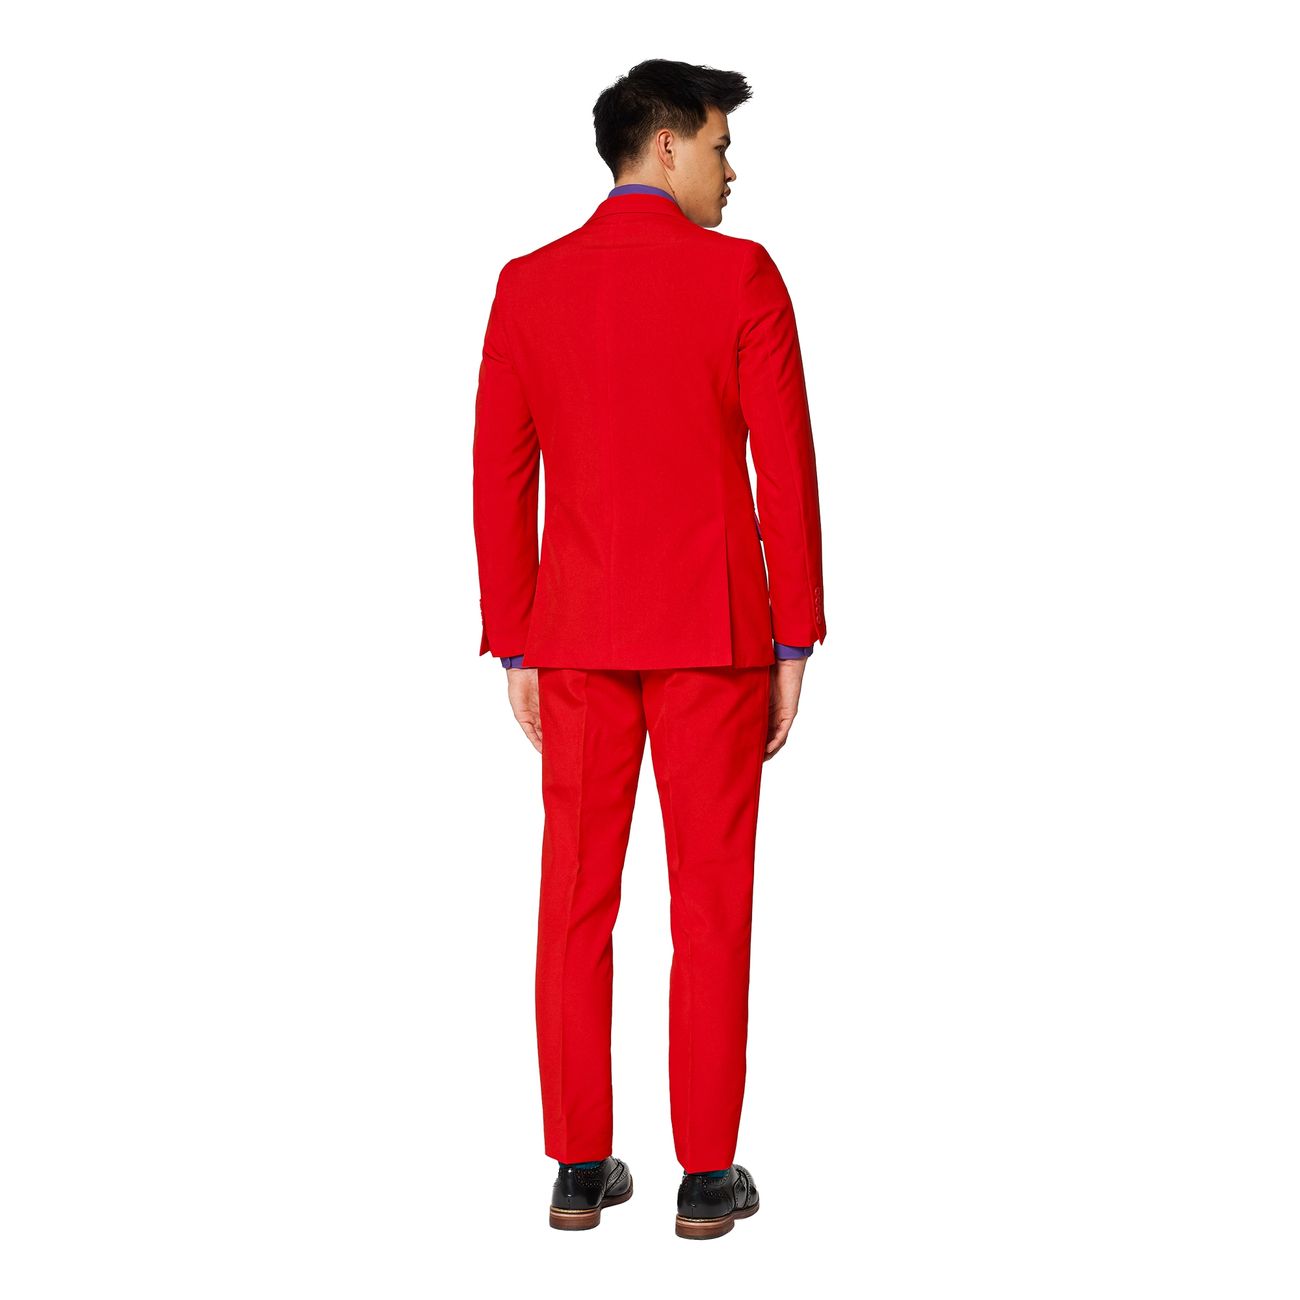 opposuits-red-devil-kostym-16980-13